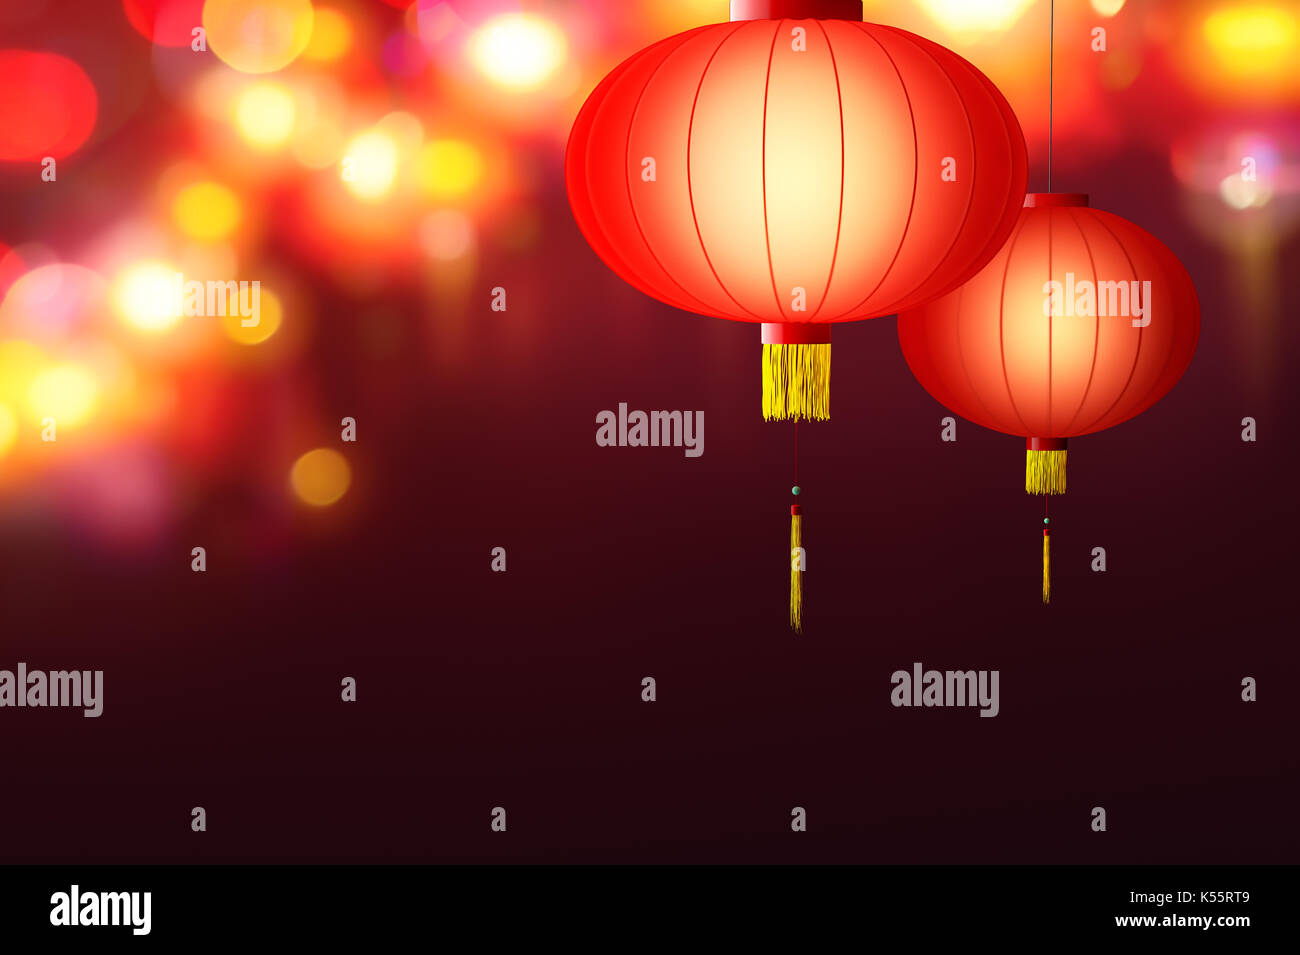 Chinese New Year - Hanging Chinese lanterns Stock Photo